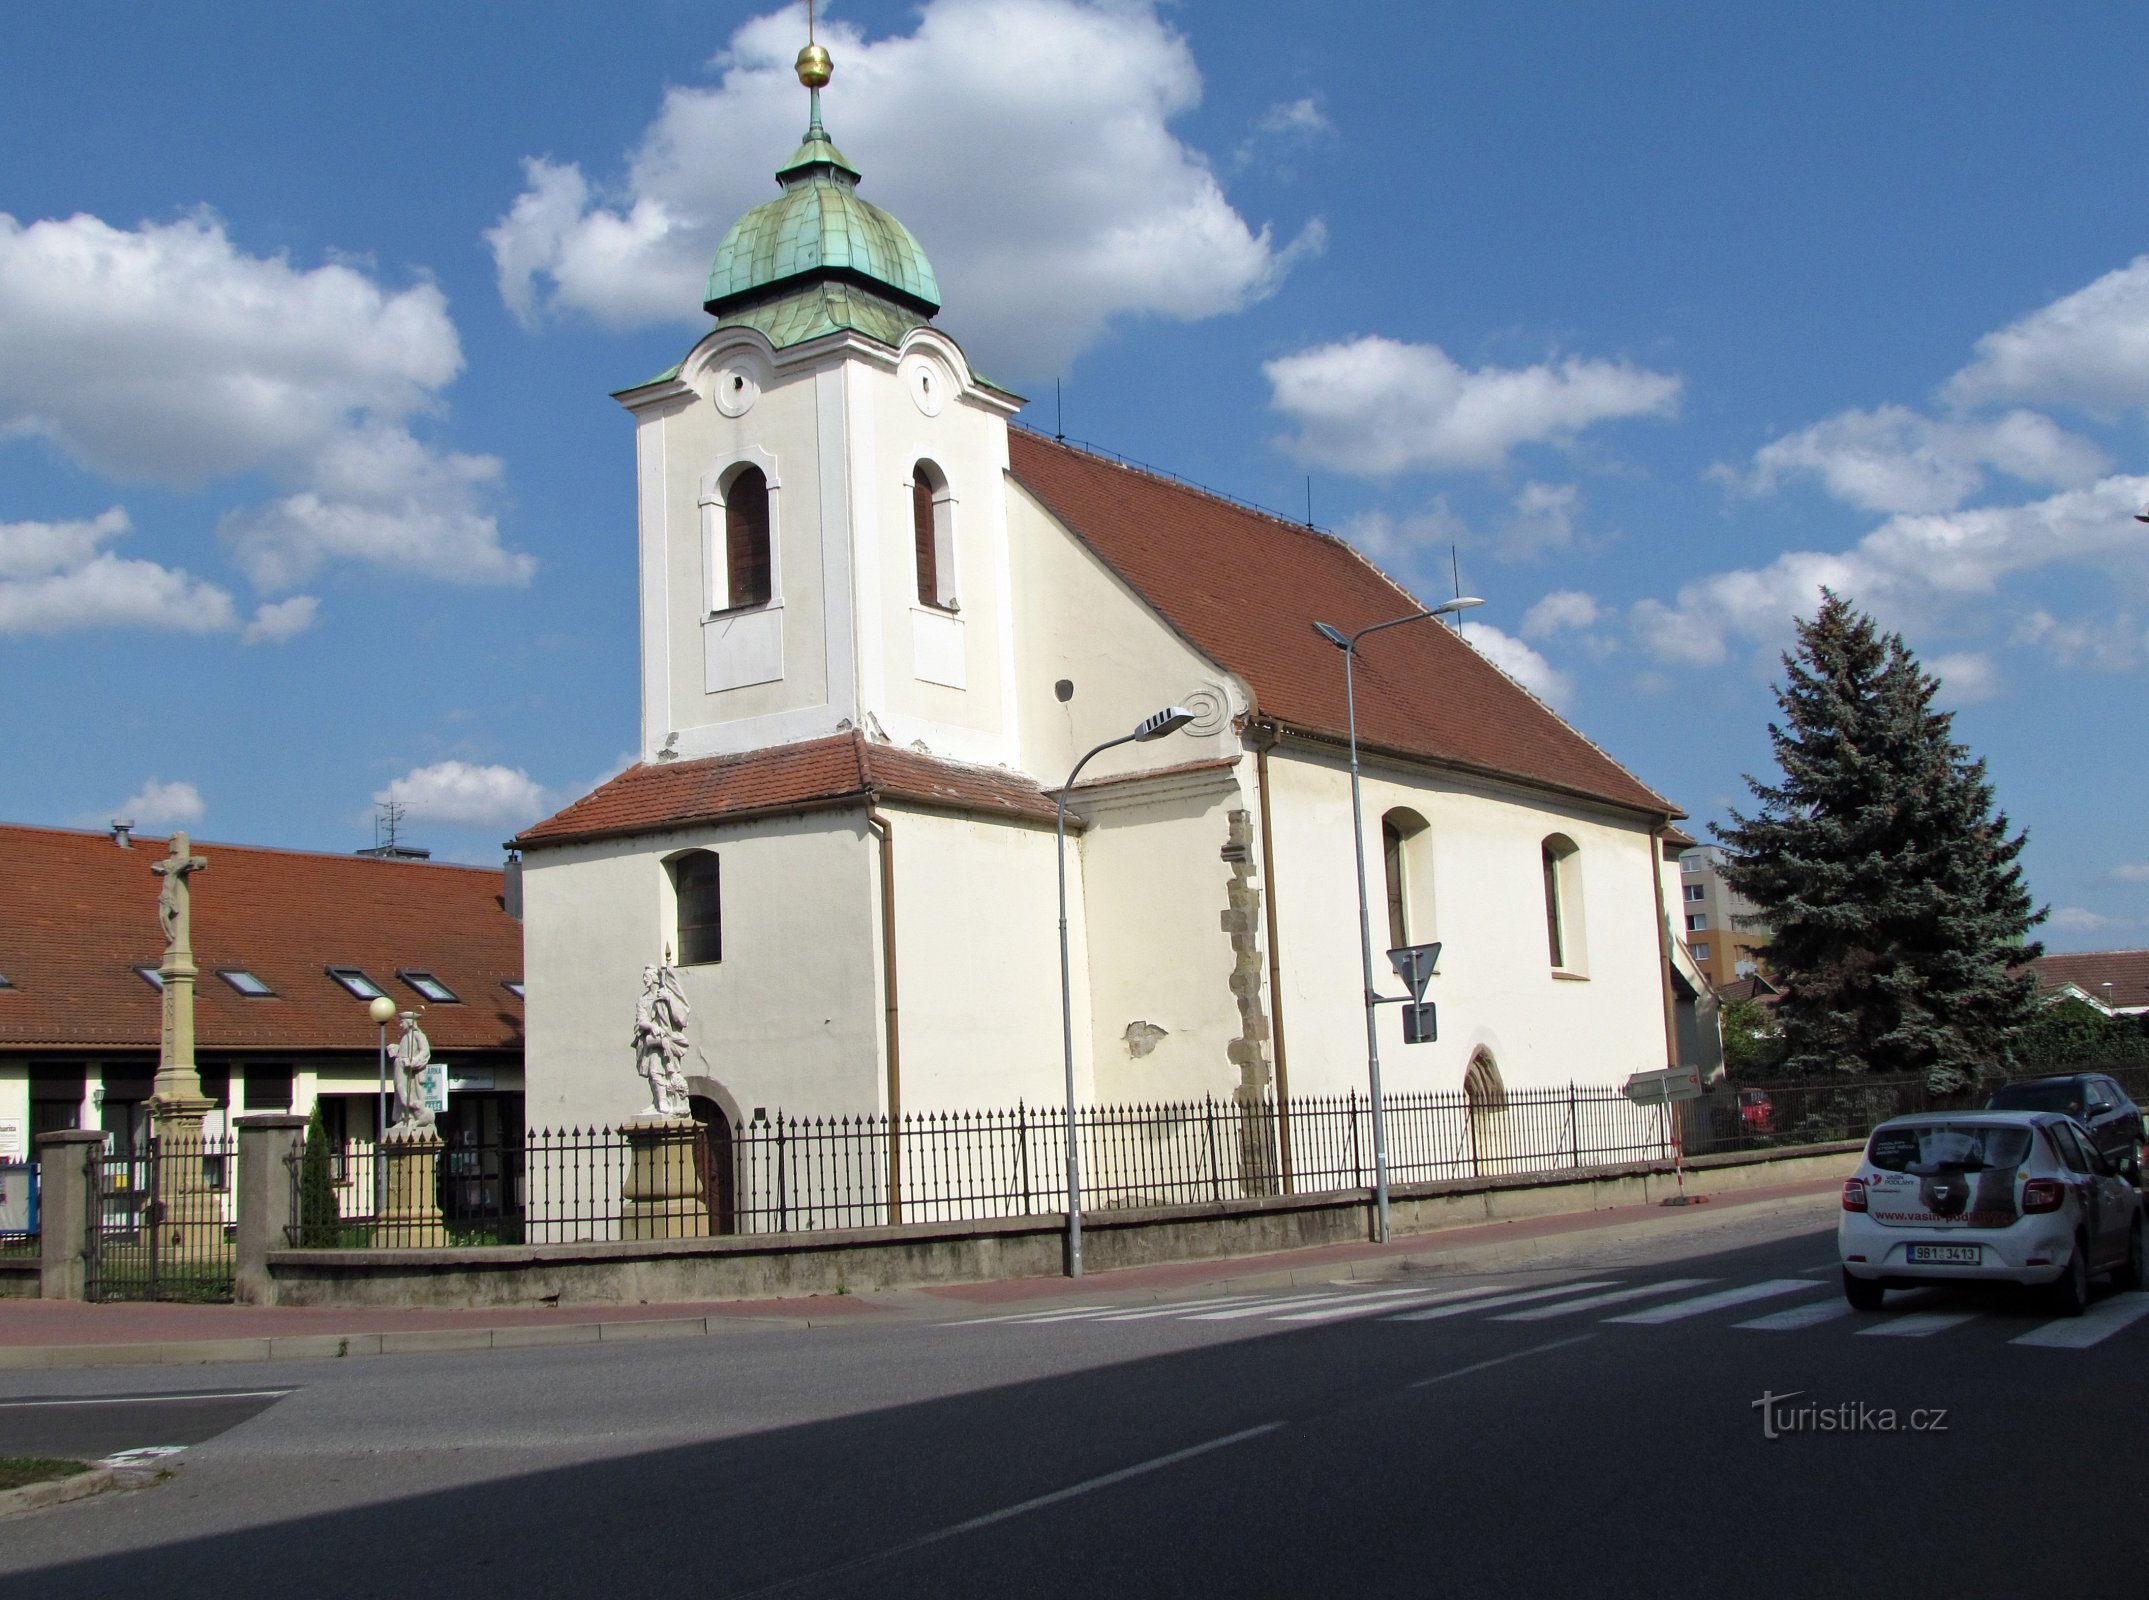 Veselí nad Moravou - Szűz Mária templom